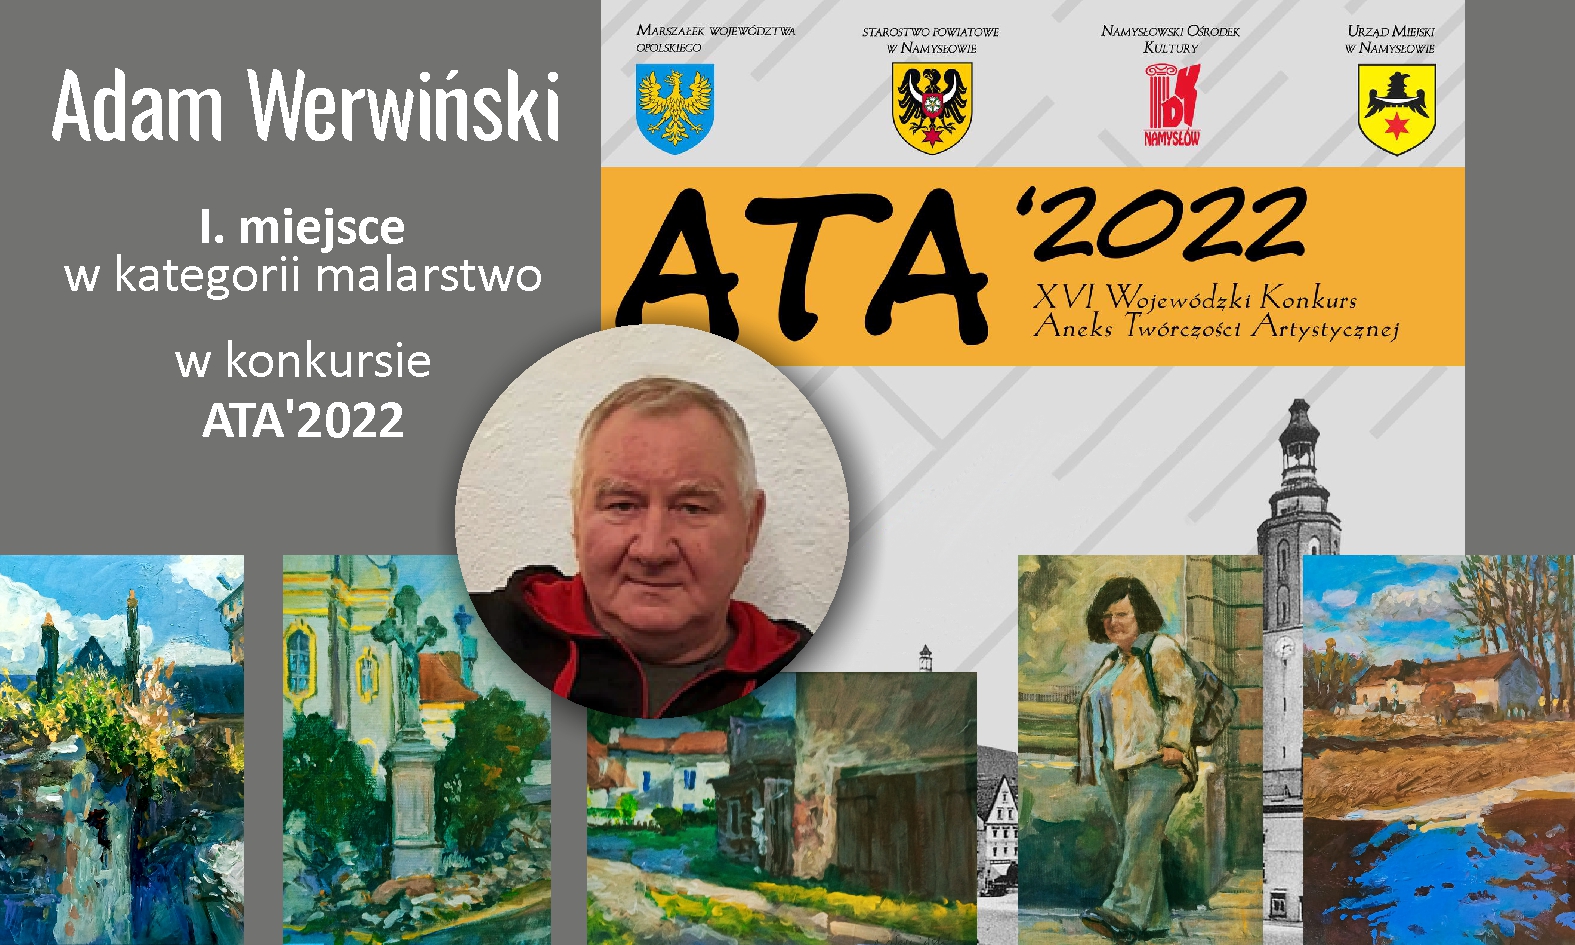 ATA’ 2022 – Adam Werwiński